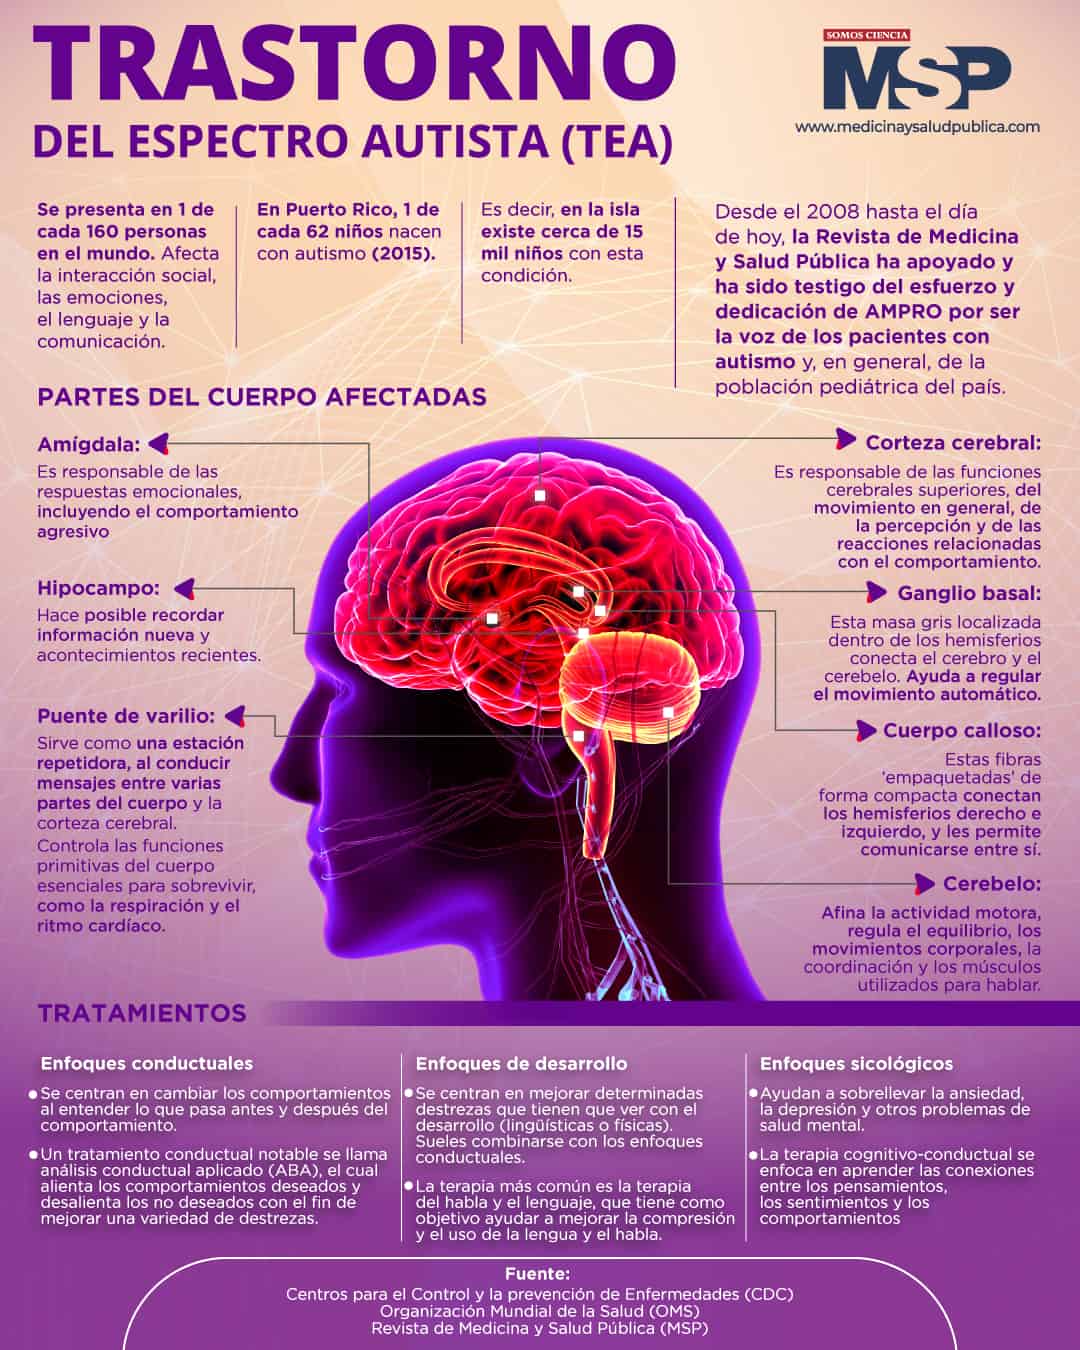 Signos y síntomas de los trastornos del espectro autista